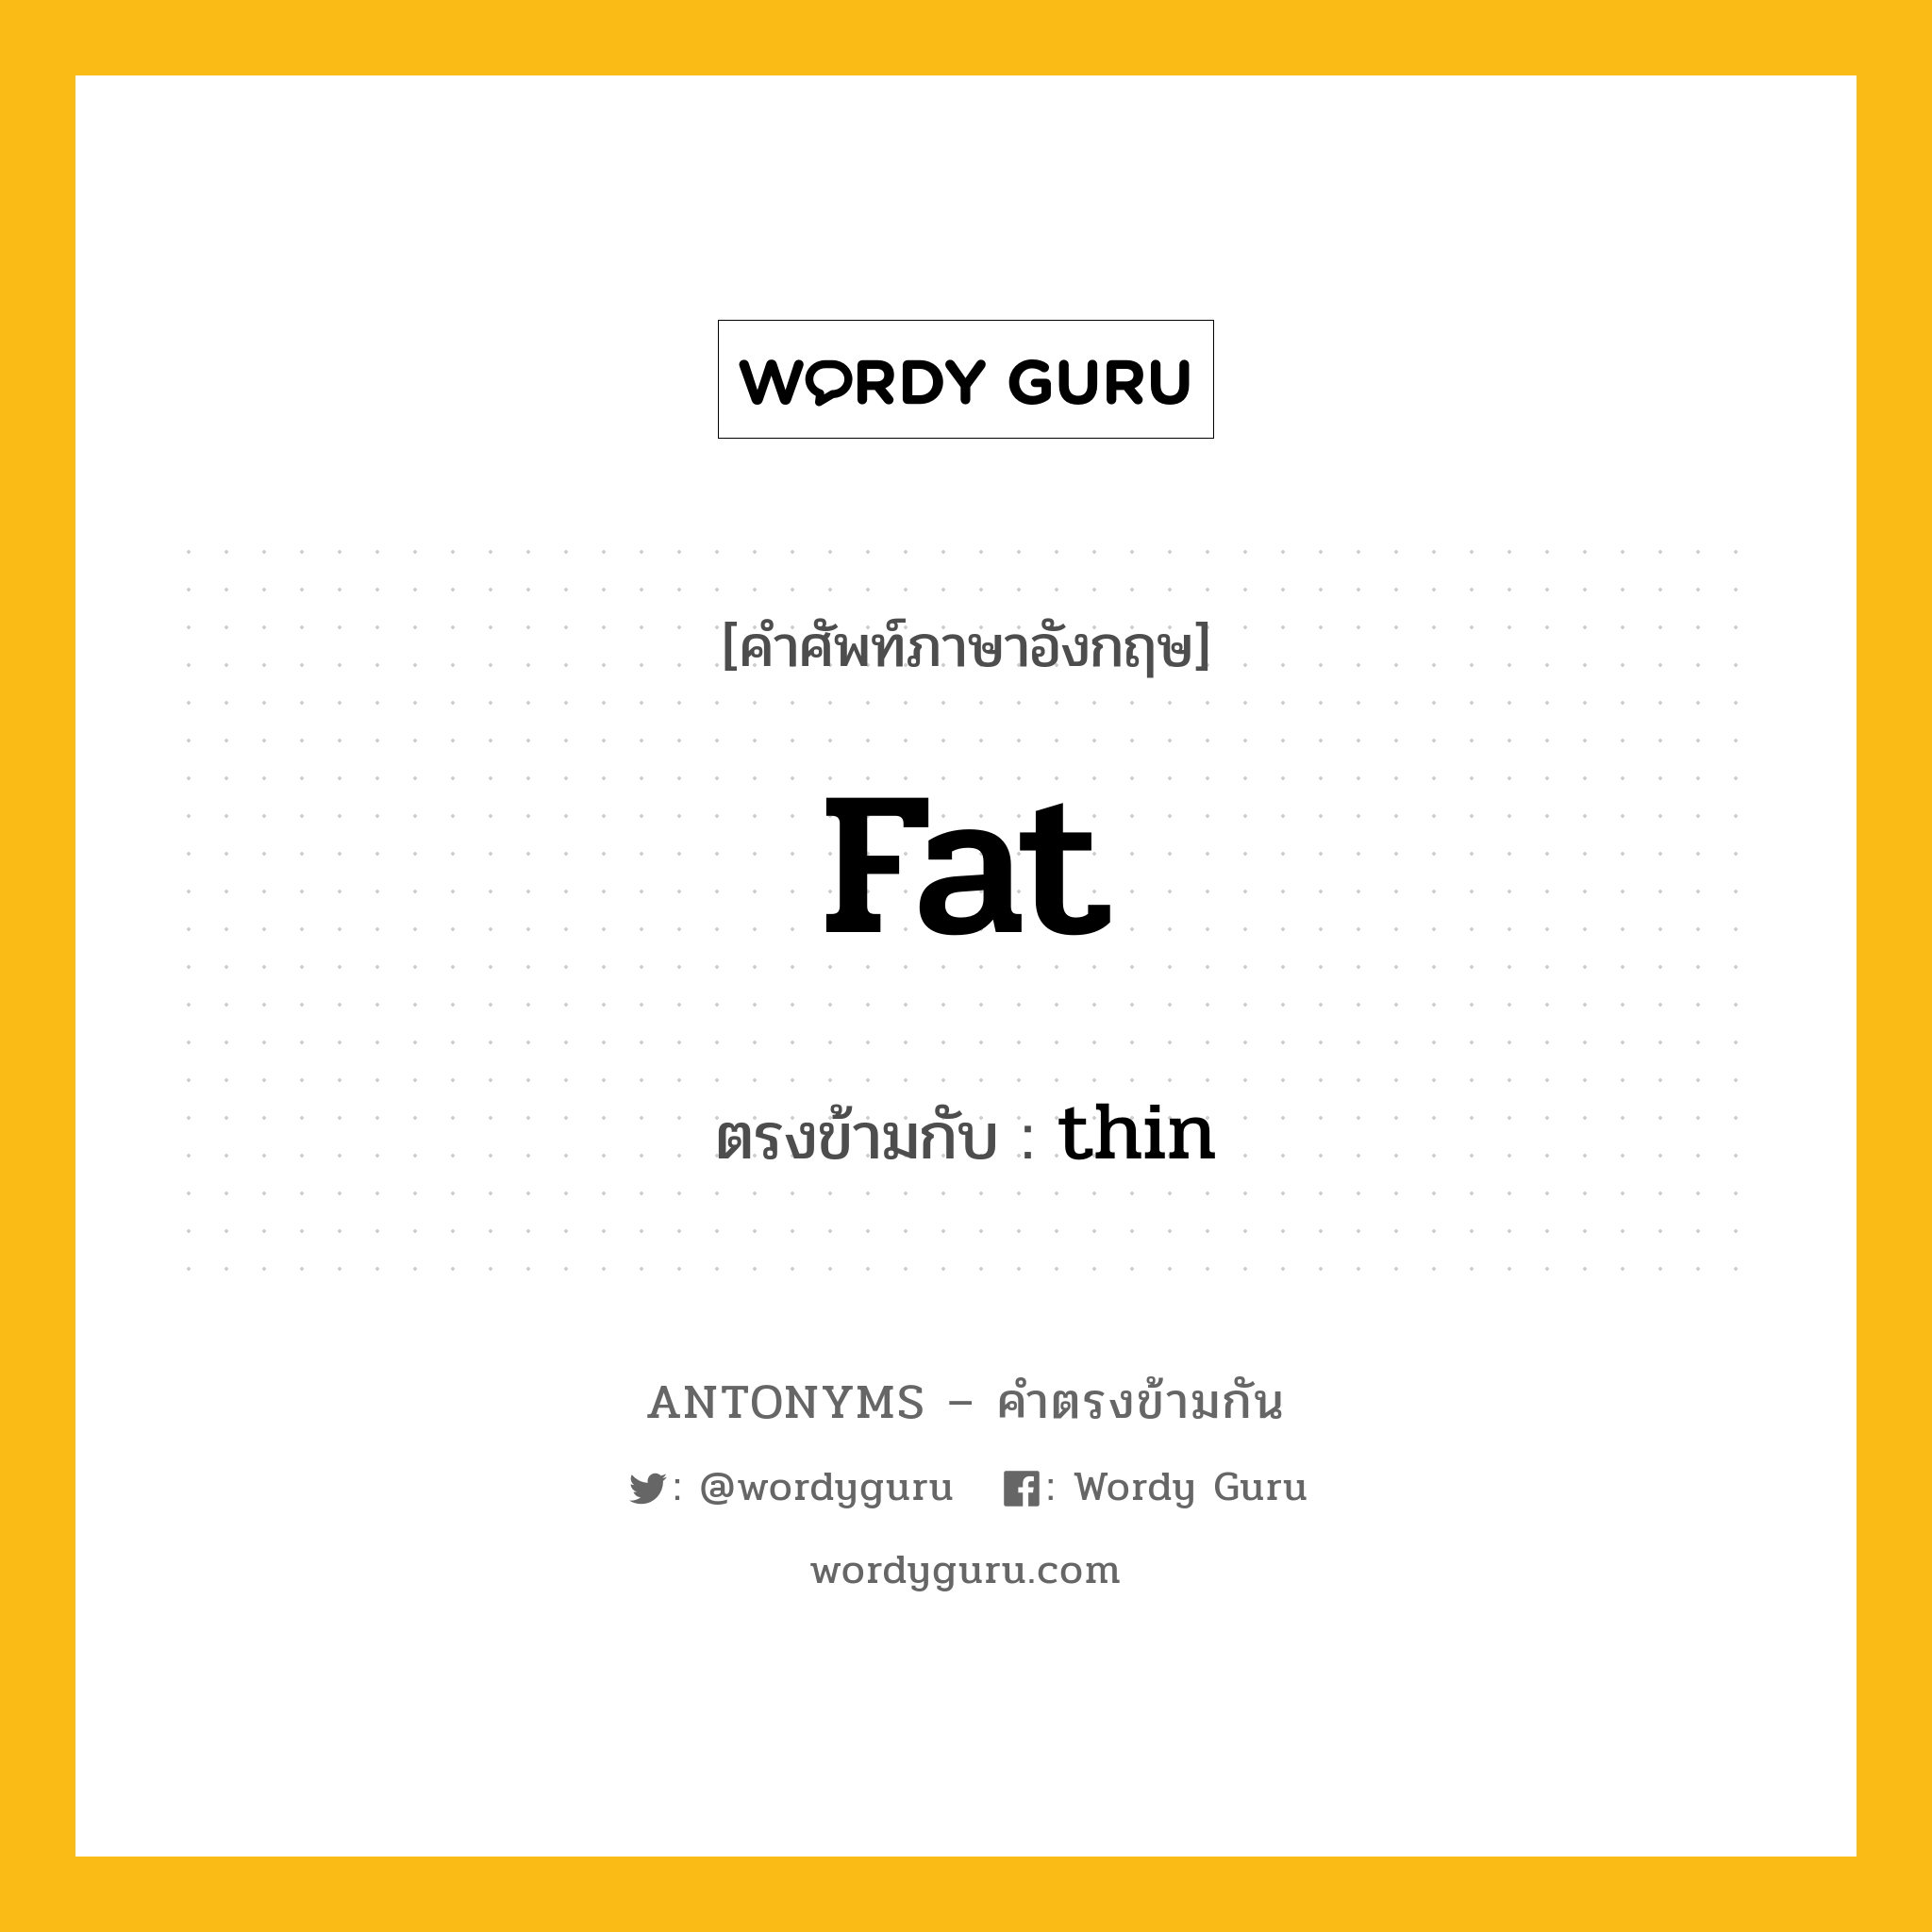 fat เป็นคำตรงข้ามกับคำไหนบ้าง?, คำศัพท์ภาษาอังกฤษ fat ตรงข้ามกับ thin หมวด thin